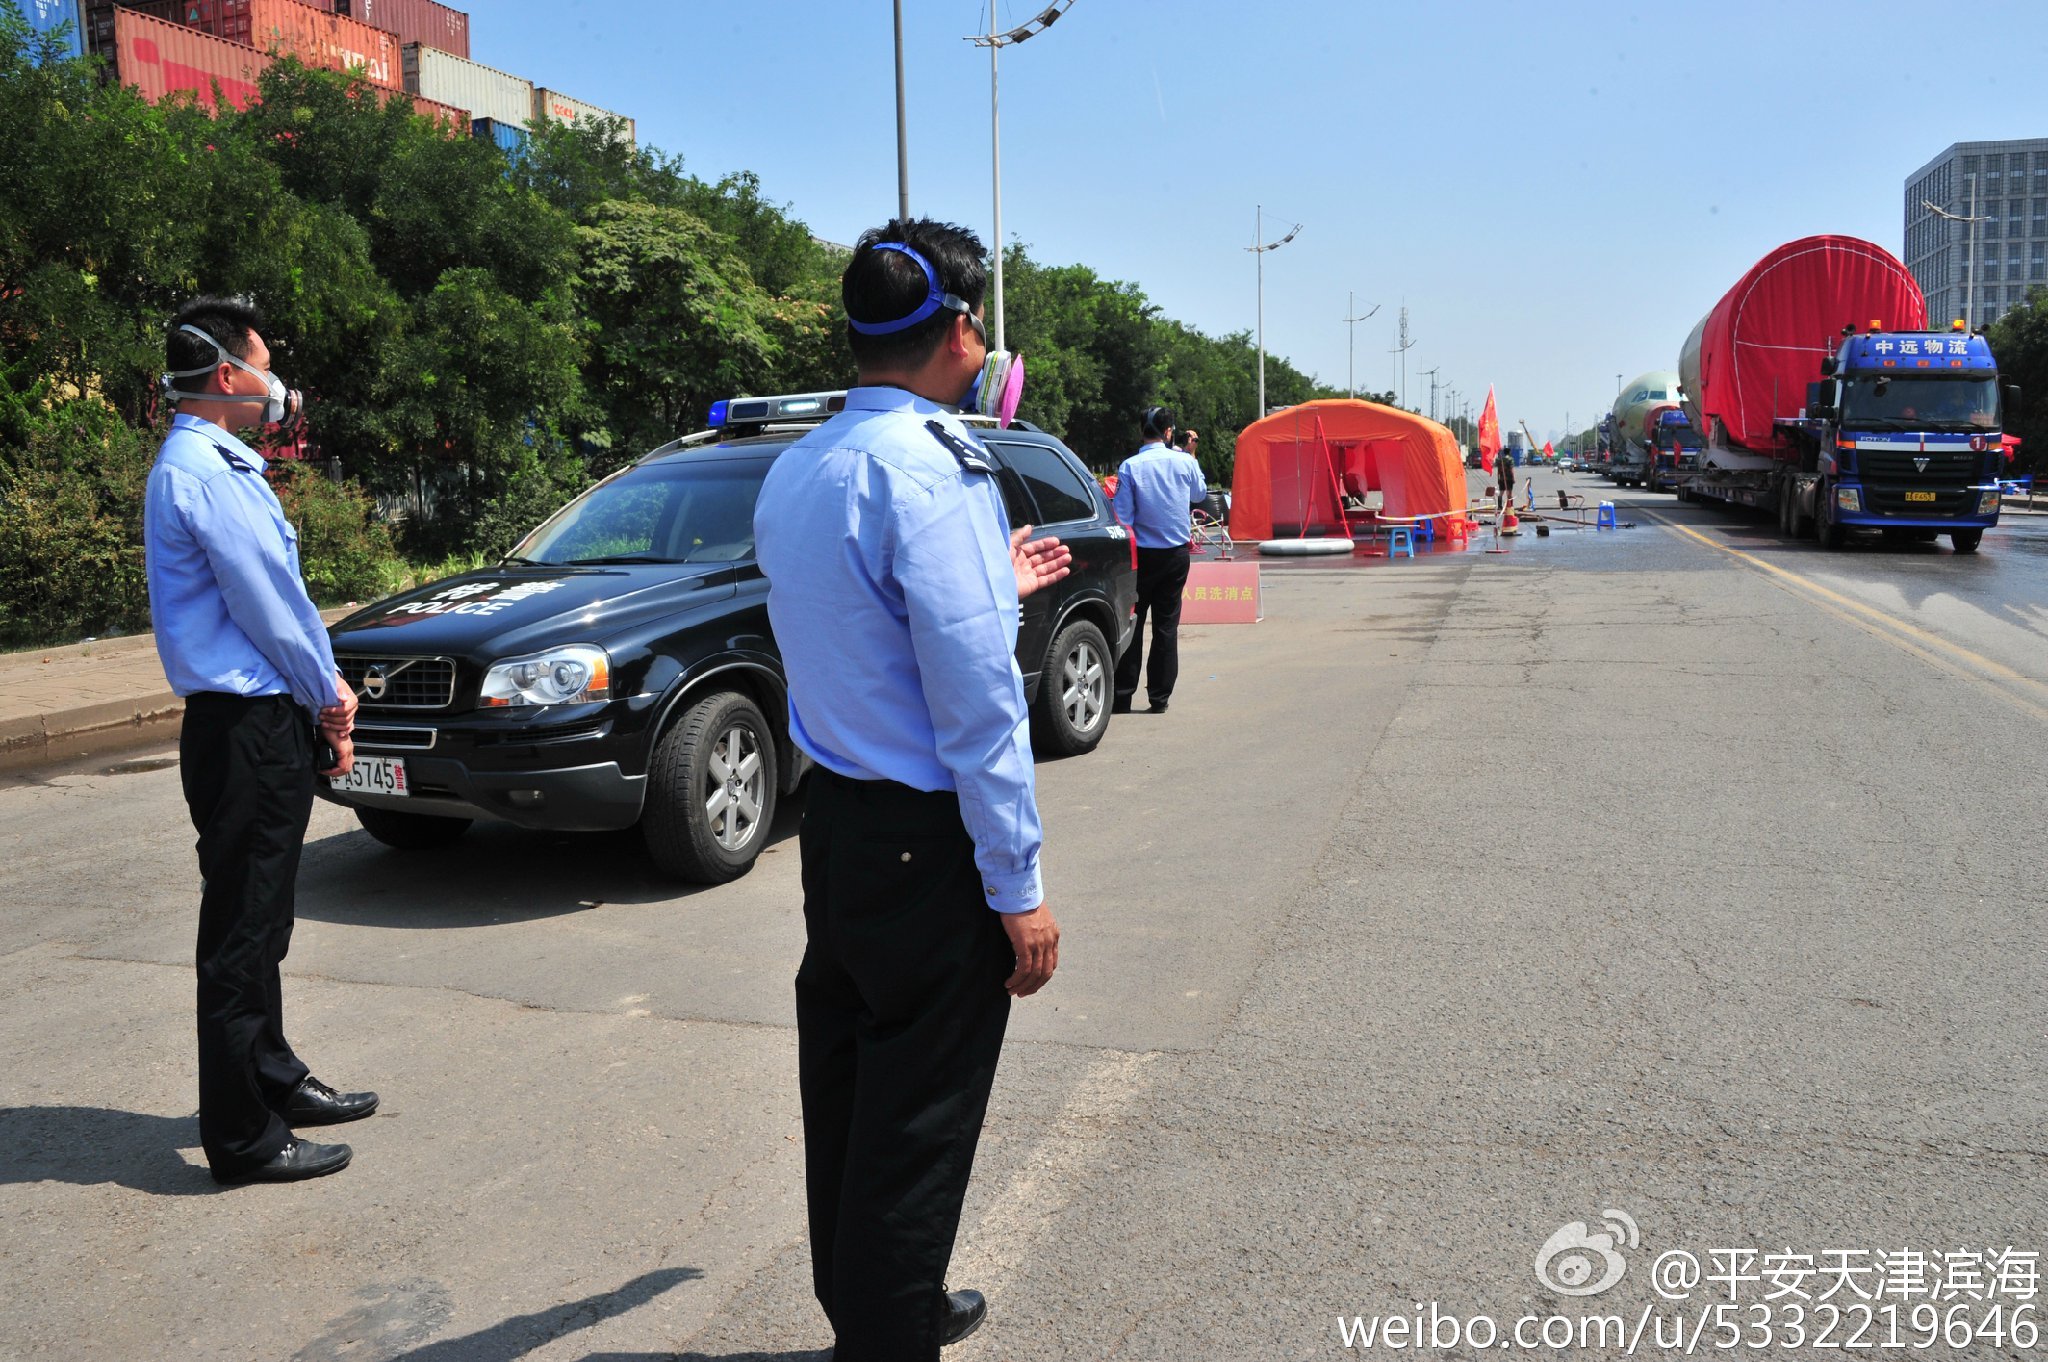 天津市滨海新区公安局官方微博发布的照片